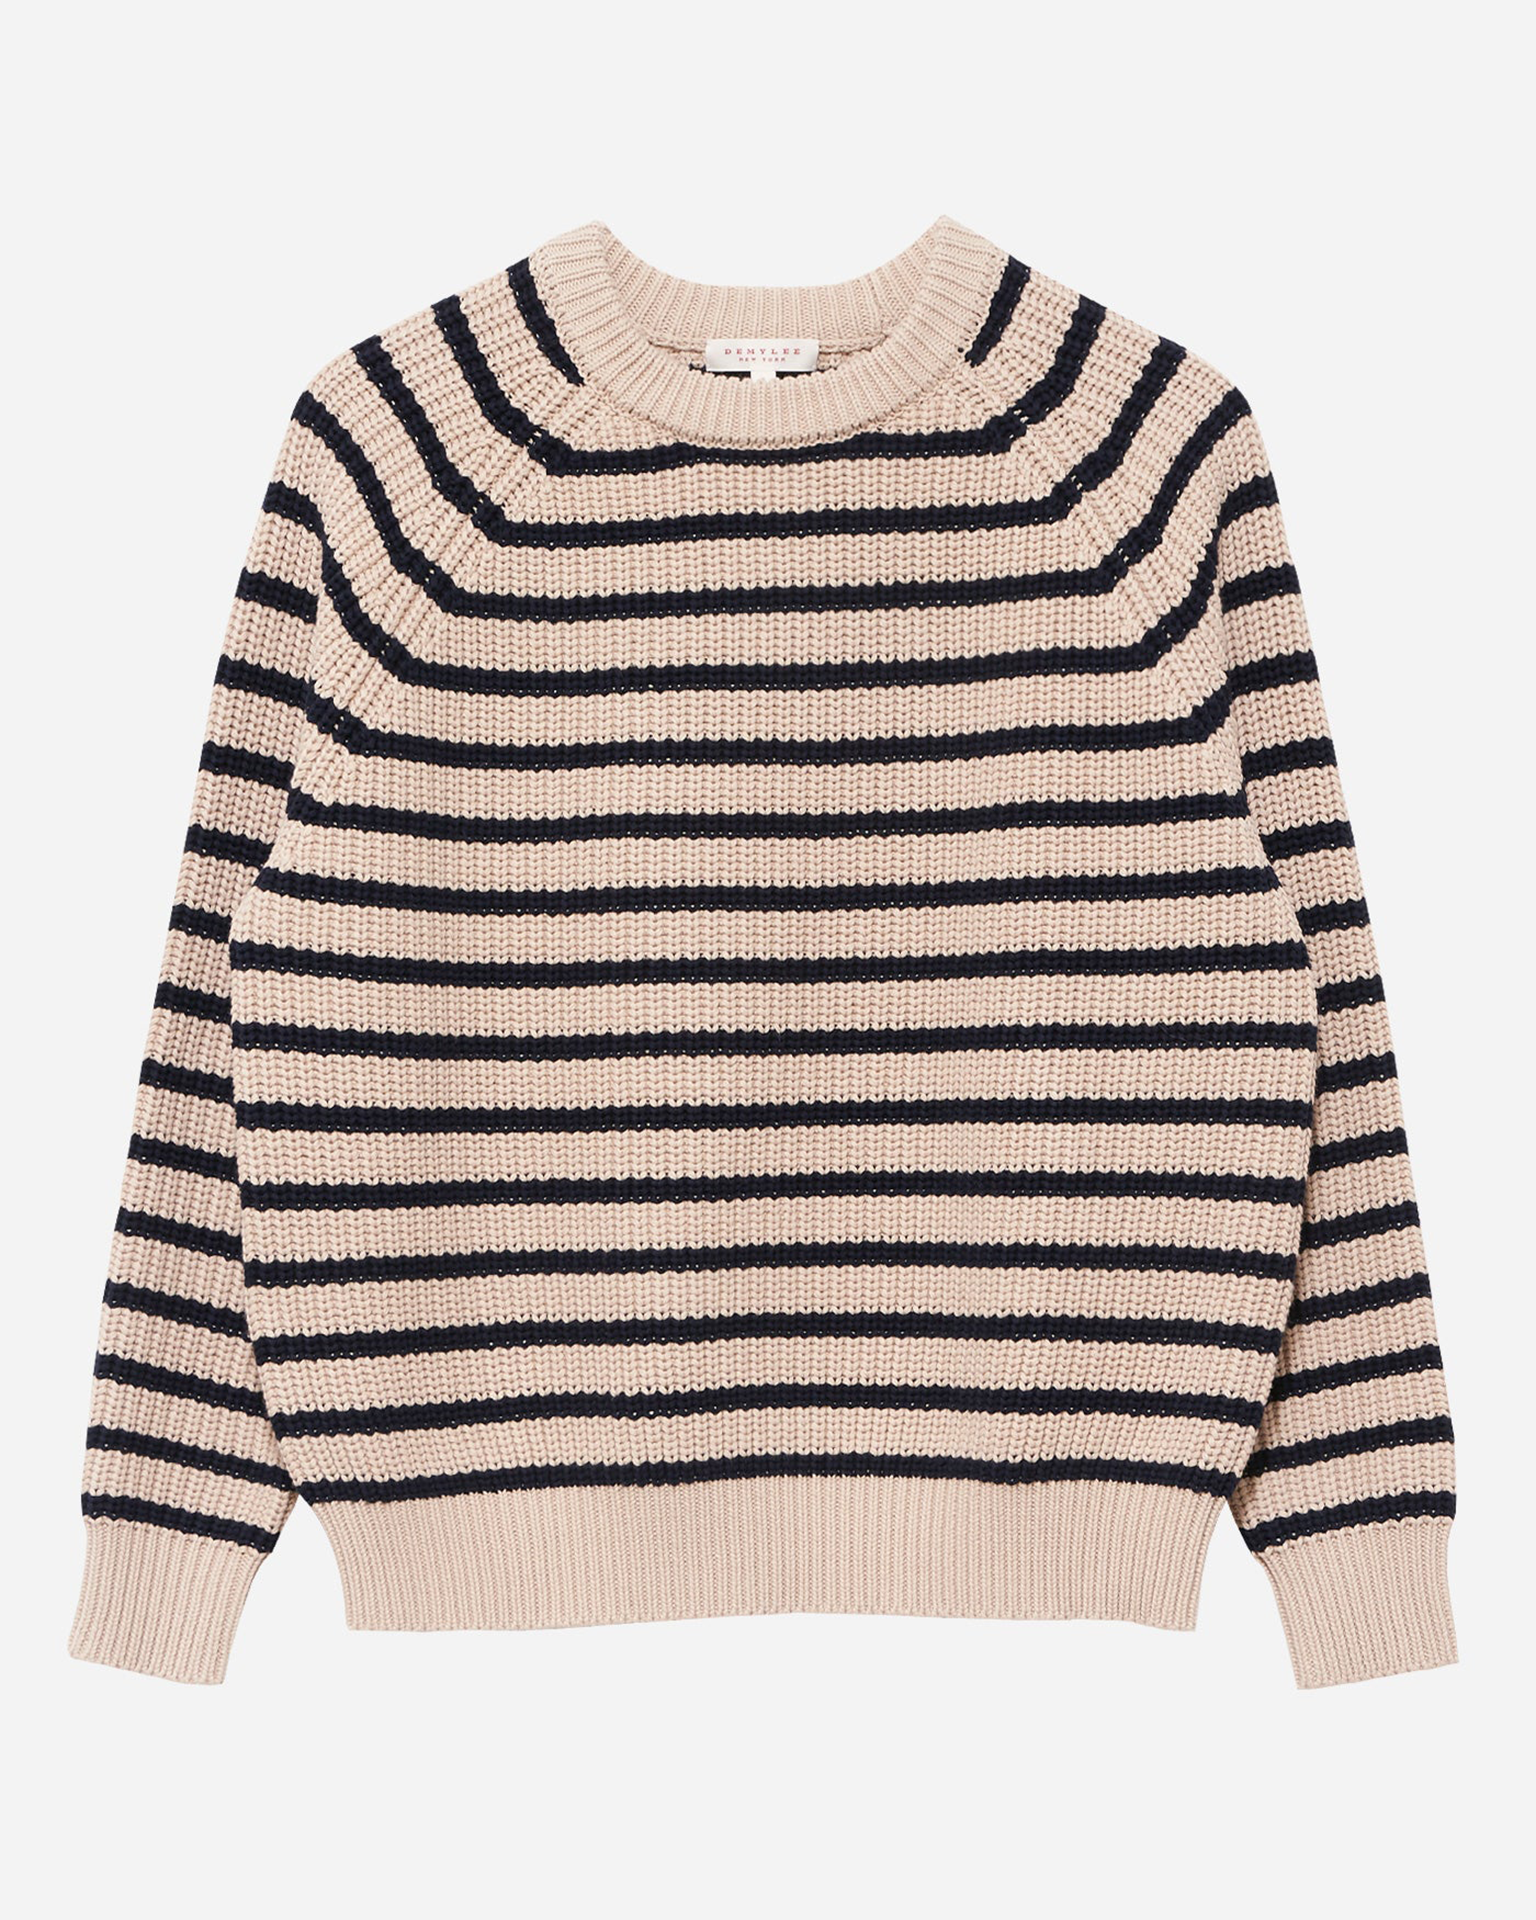 Autumn Dreams Striped Sweater - Black/White